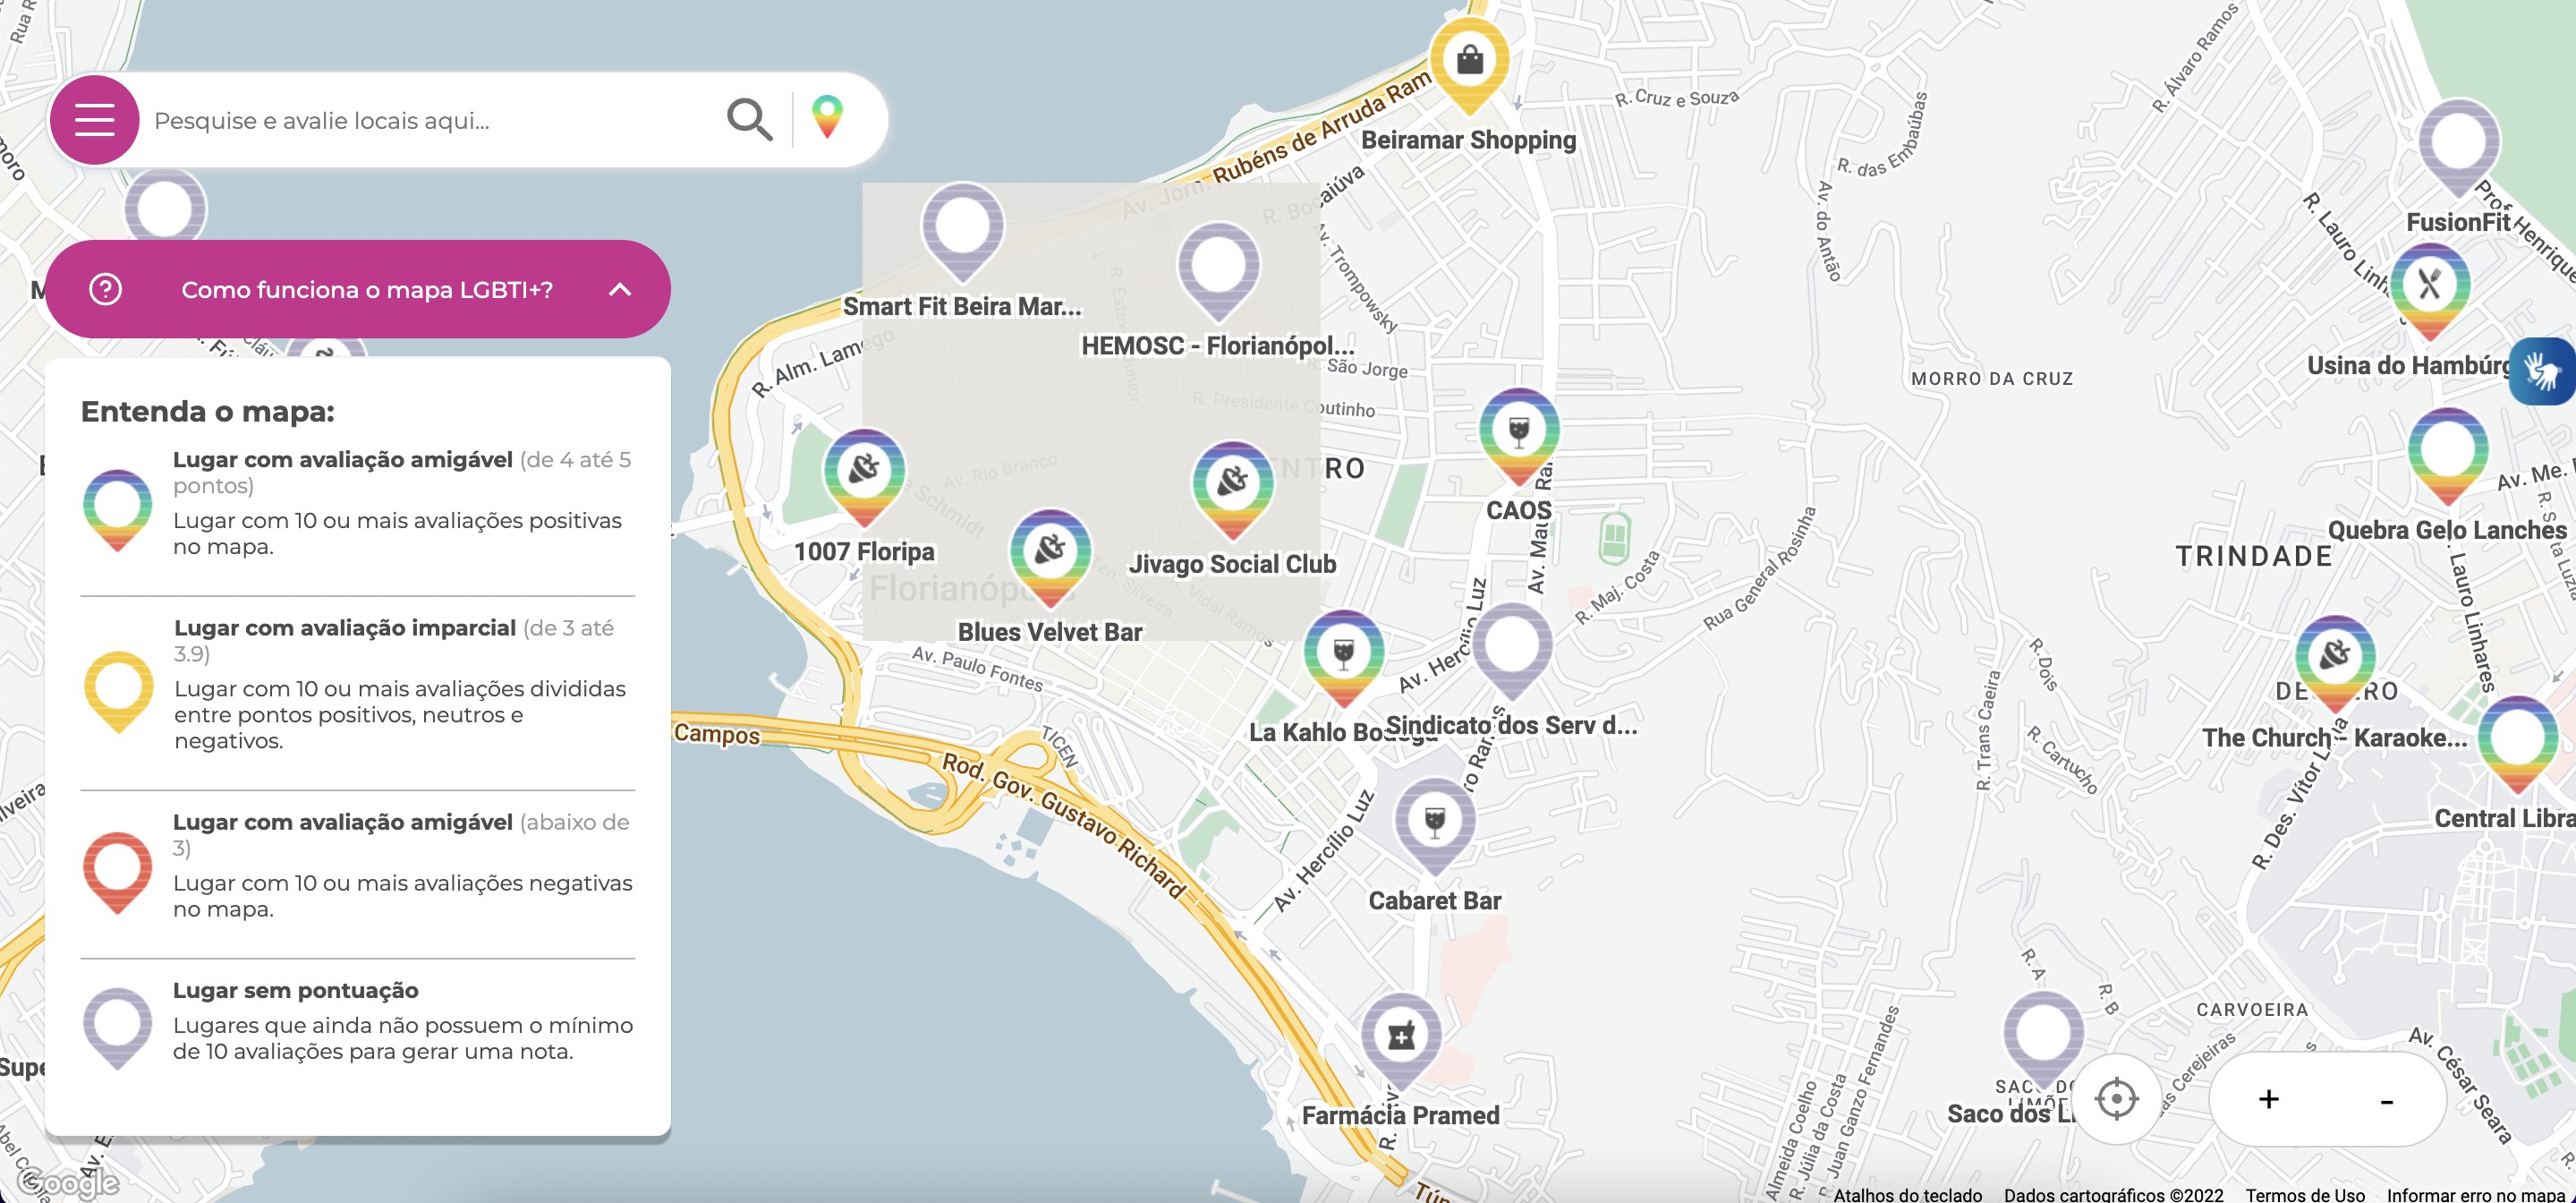 Plataforma ajuda a identificar lugares amigáveis para população LGBTI+ no Brasil (Foto: Divulgação)